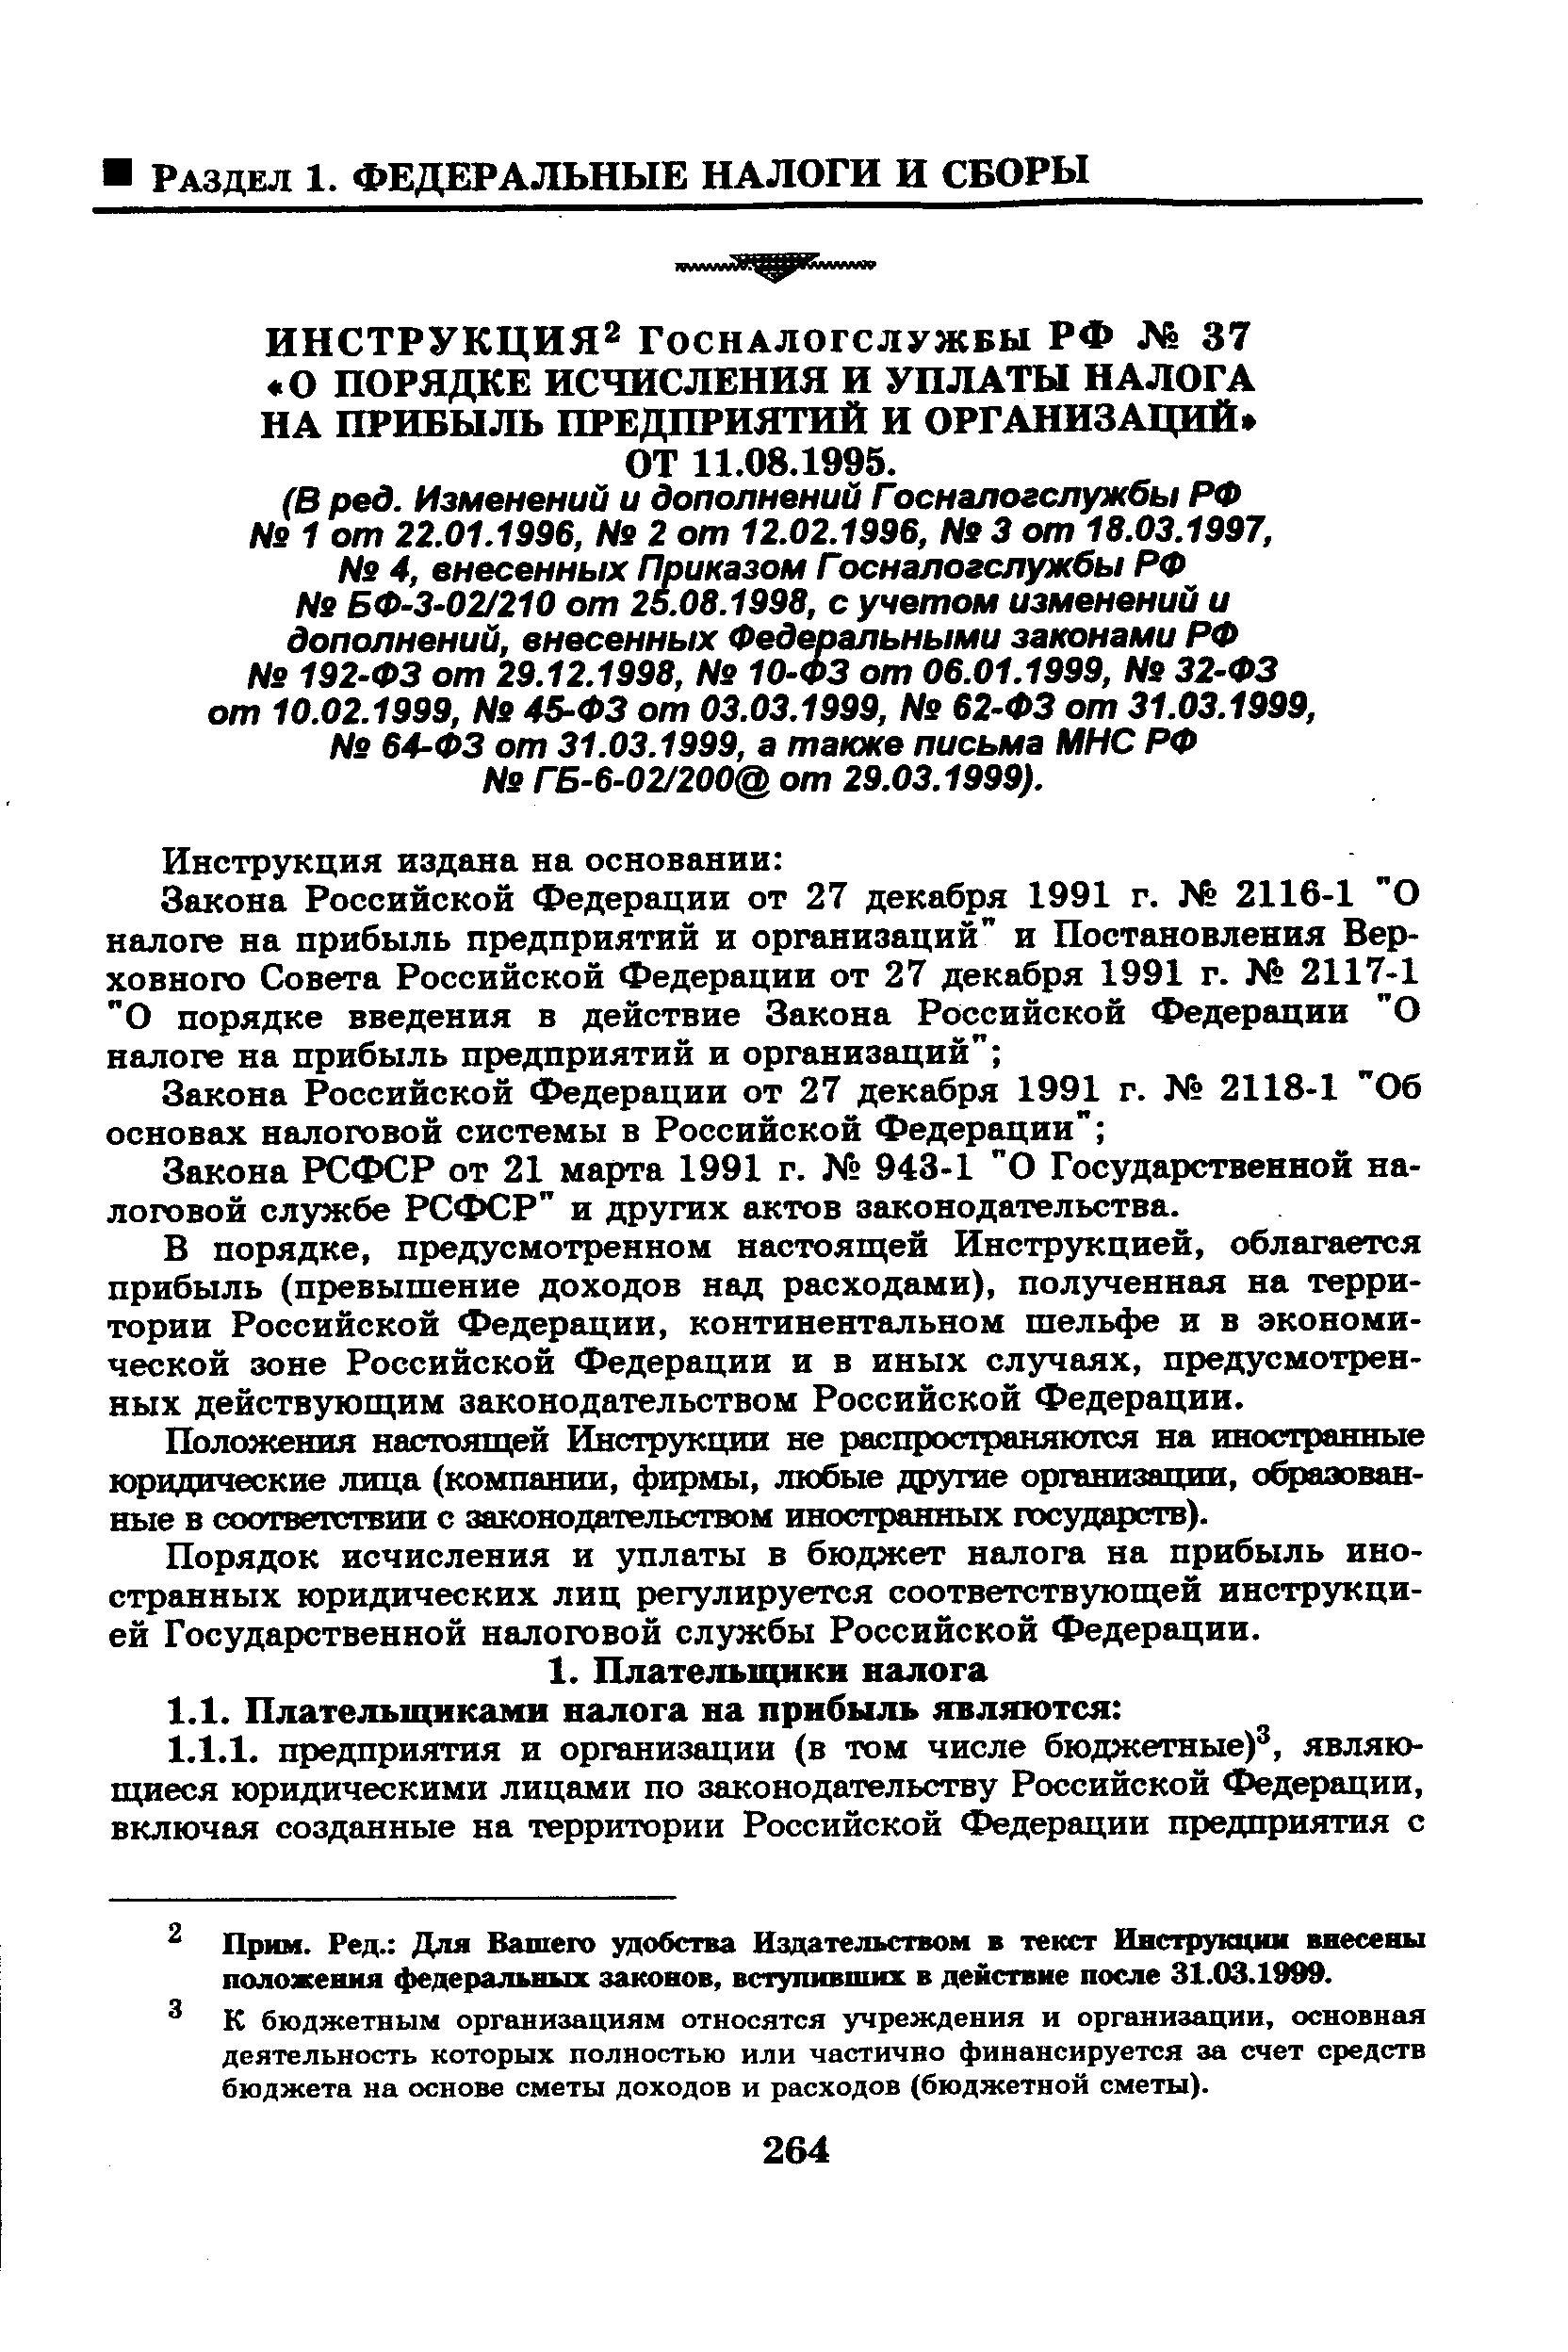 Закона РСФСР от 21 марта 1991 г. 943-1 О Государственной налоговой службе РСФСР и других актов законодательства.
